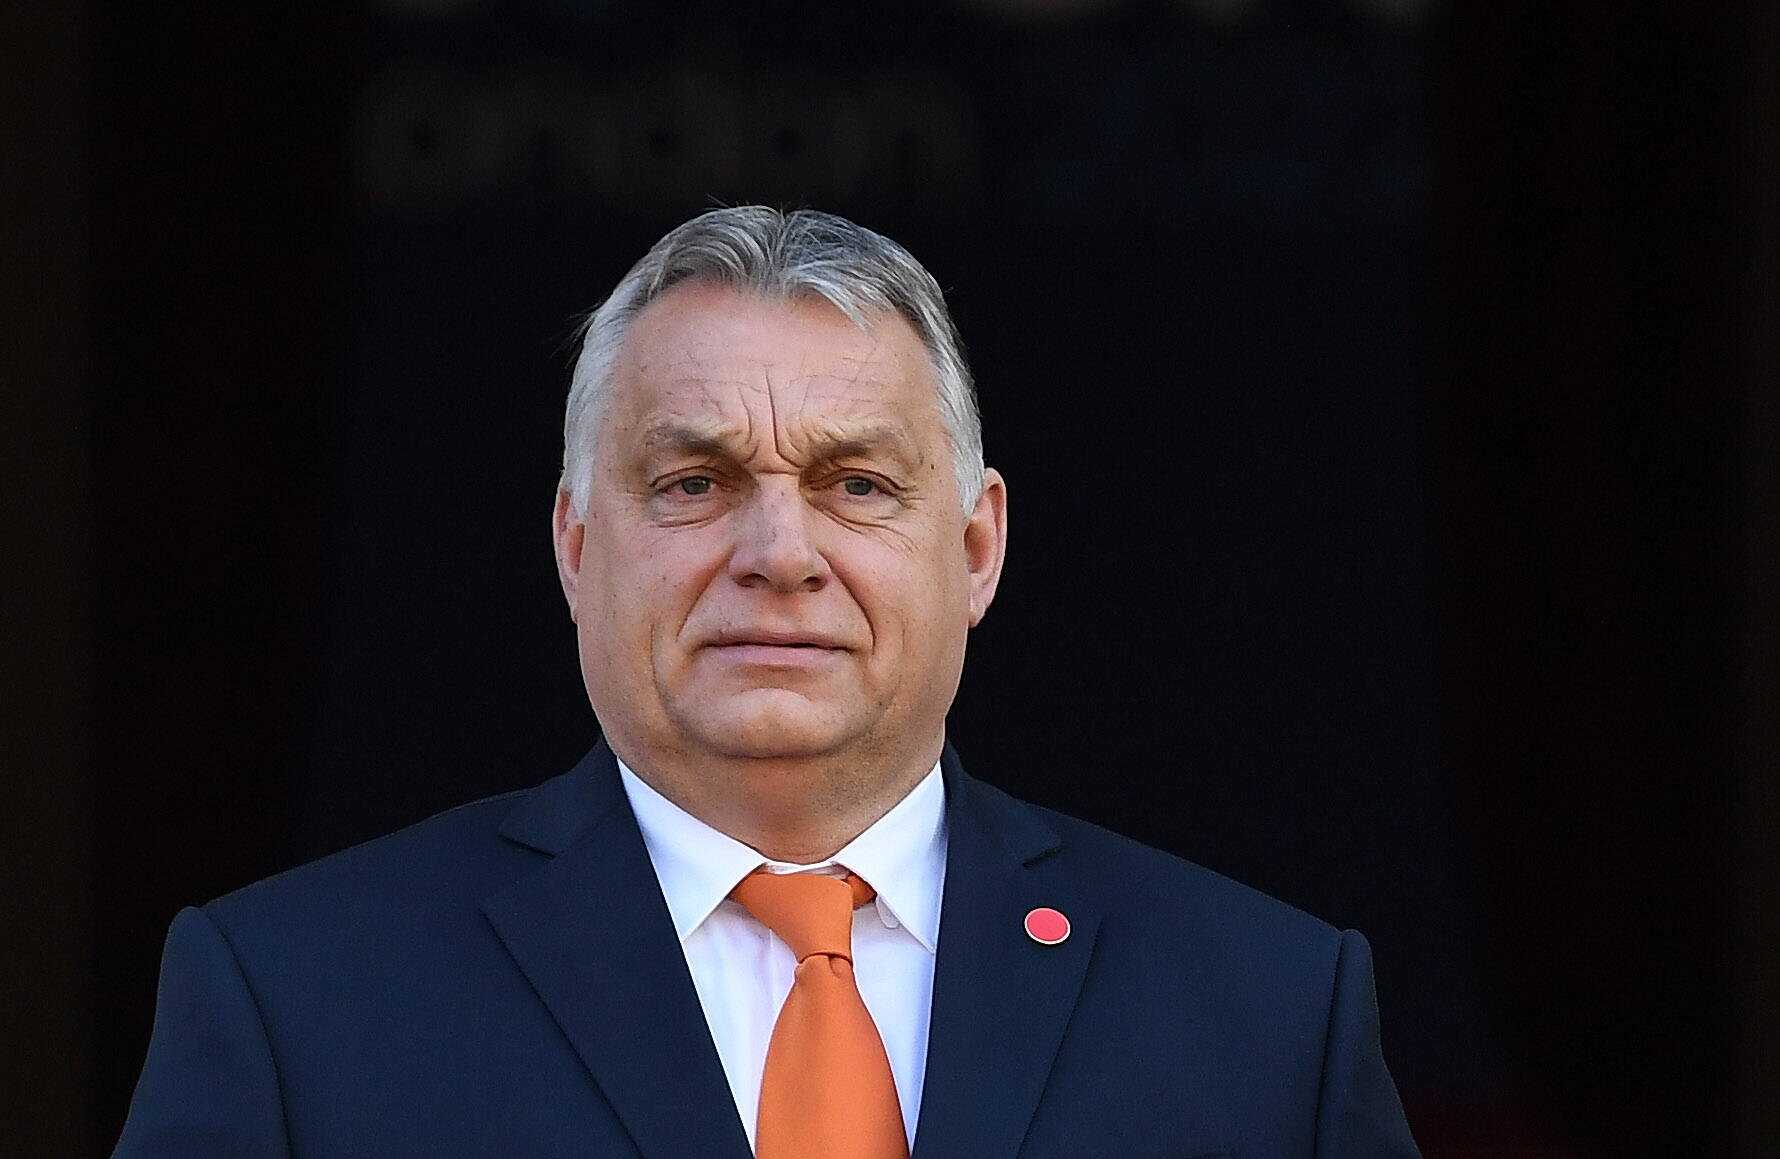 Koniec Wyszehradu? Teraz Orbán posunął się za daleko